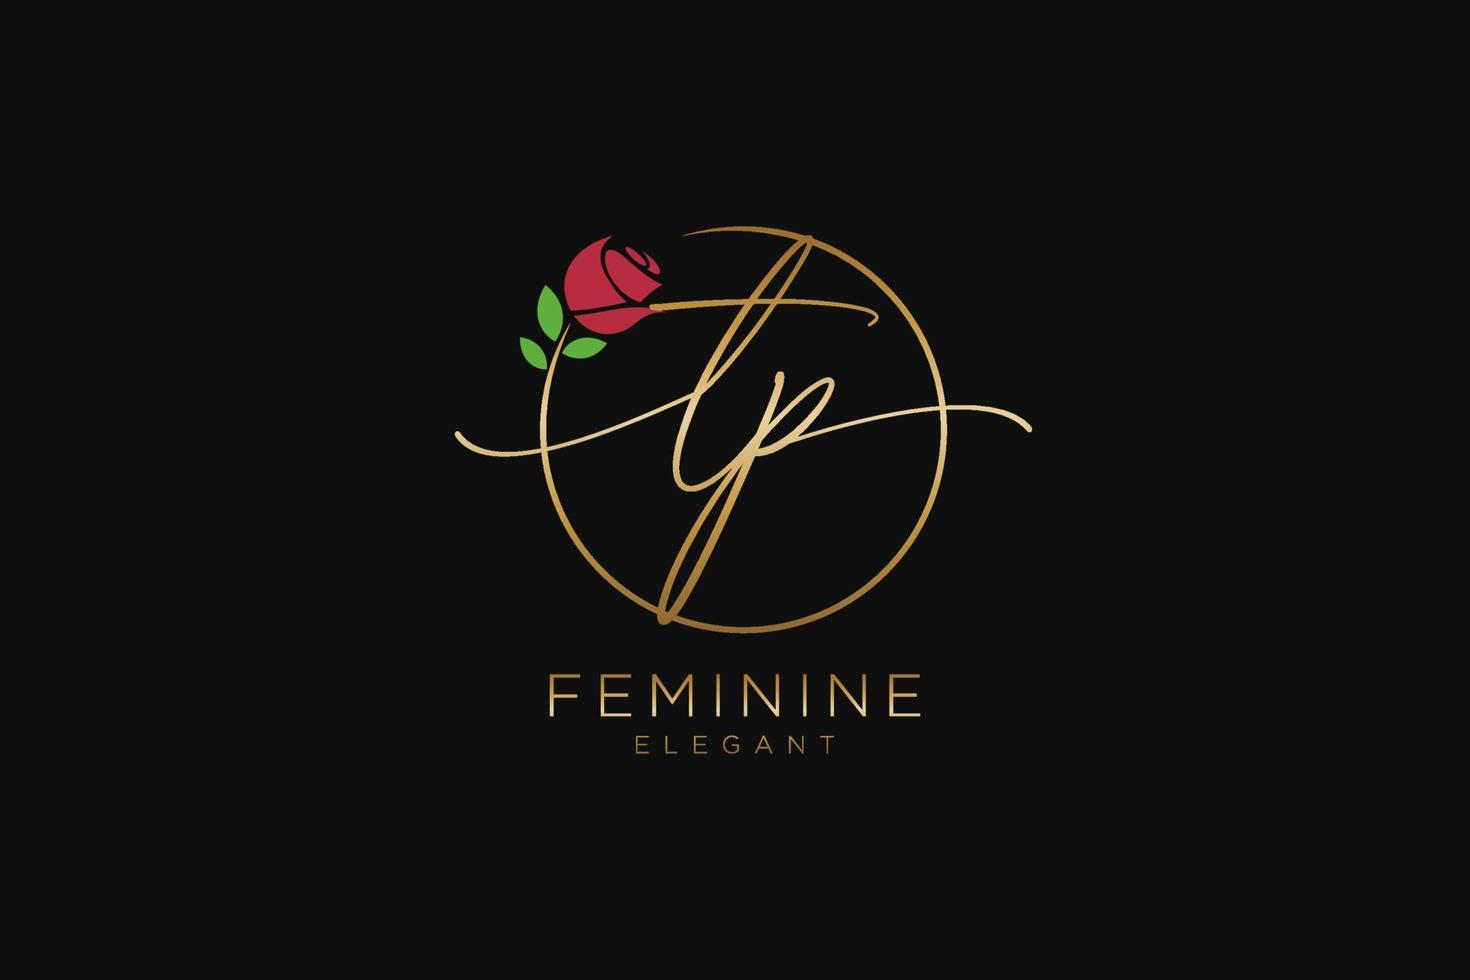 monogramme de beauté du logo féminin initial tp et design élégant du logo, logo manuscrit de la signature initiale, mariage, mode, floral et botanique avec modèle créatif. vecteur